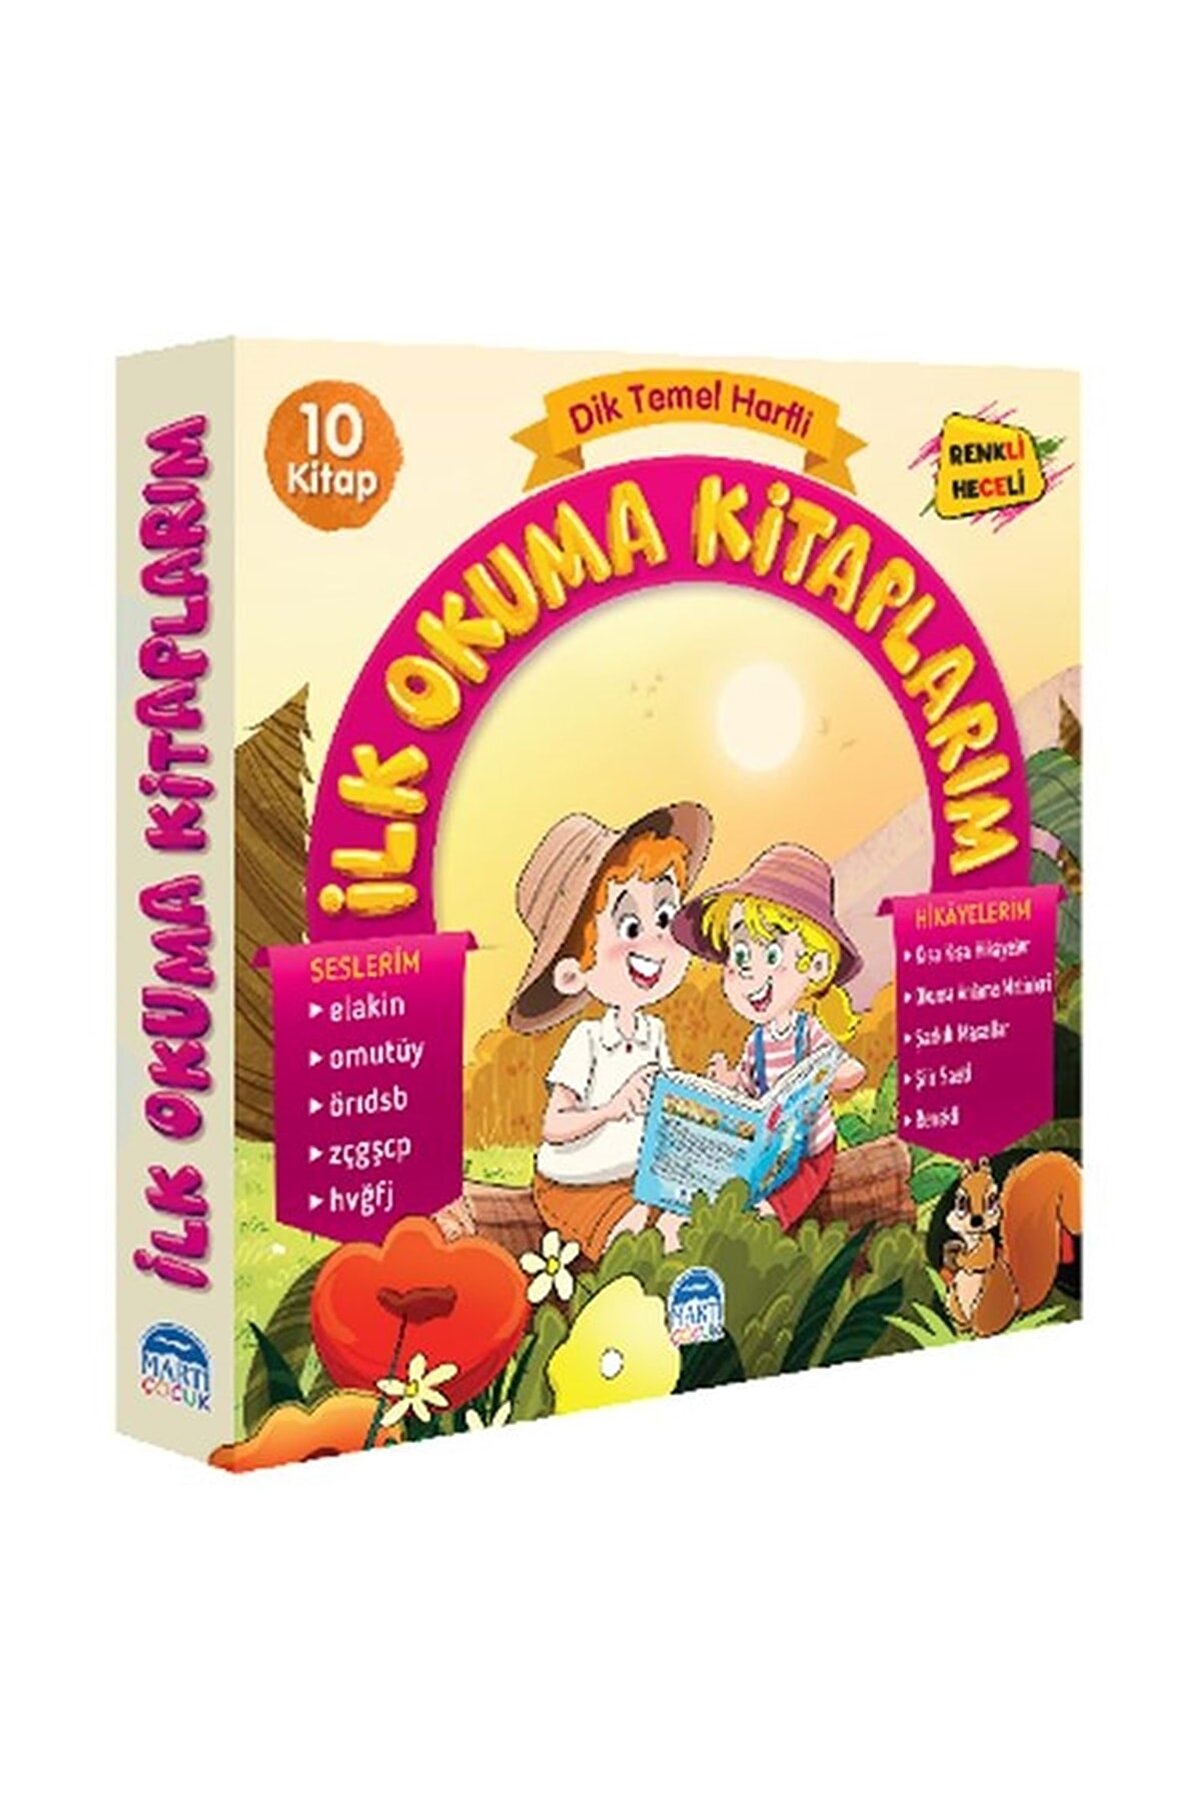 Martı Çocuk Kulübü Dik Temel Harfli Ilk Okuma Kitabım Elakin (10 KİTAP) - Pınar Türker - Martı Çocuk Yayınları